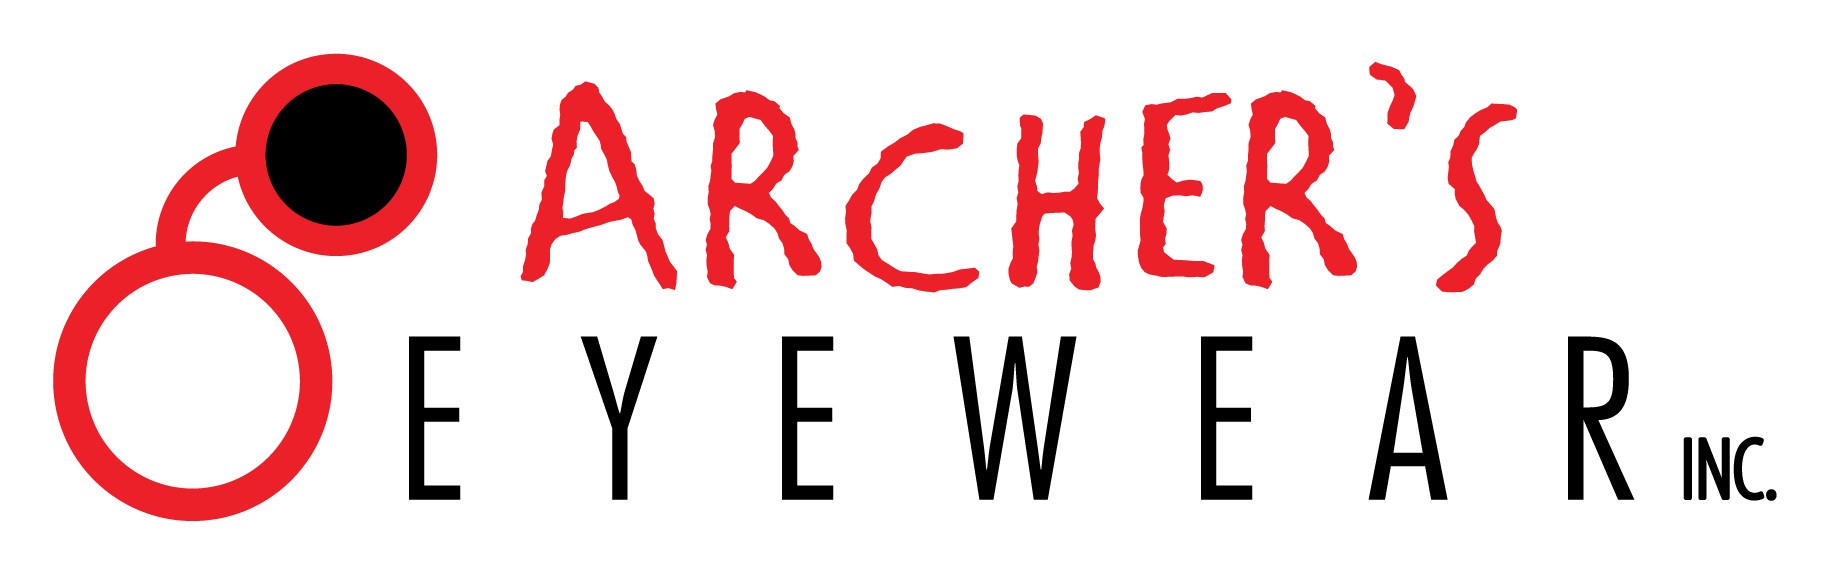 Archer's Eyewear